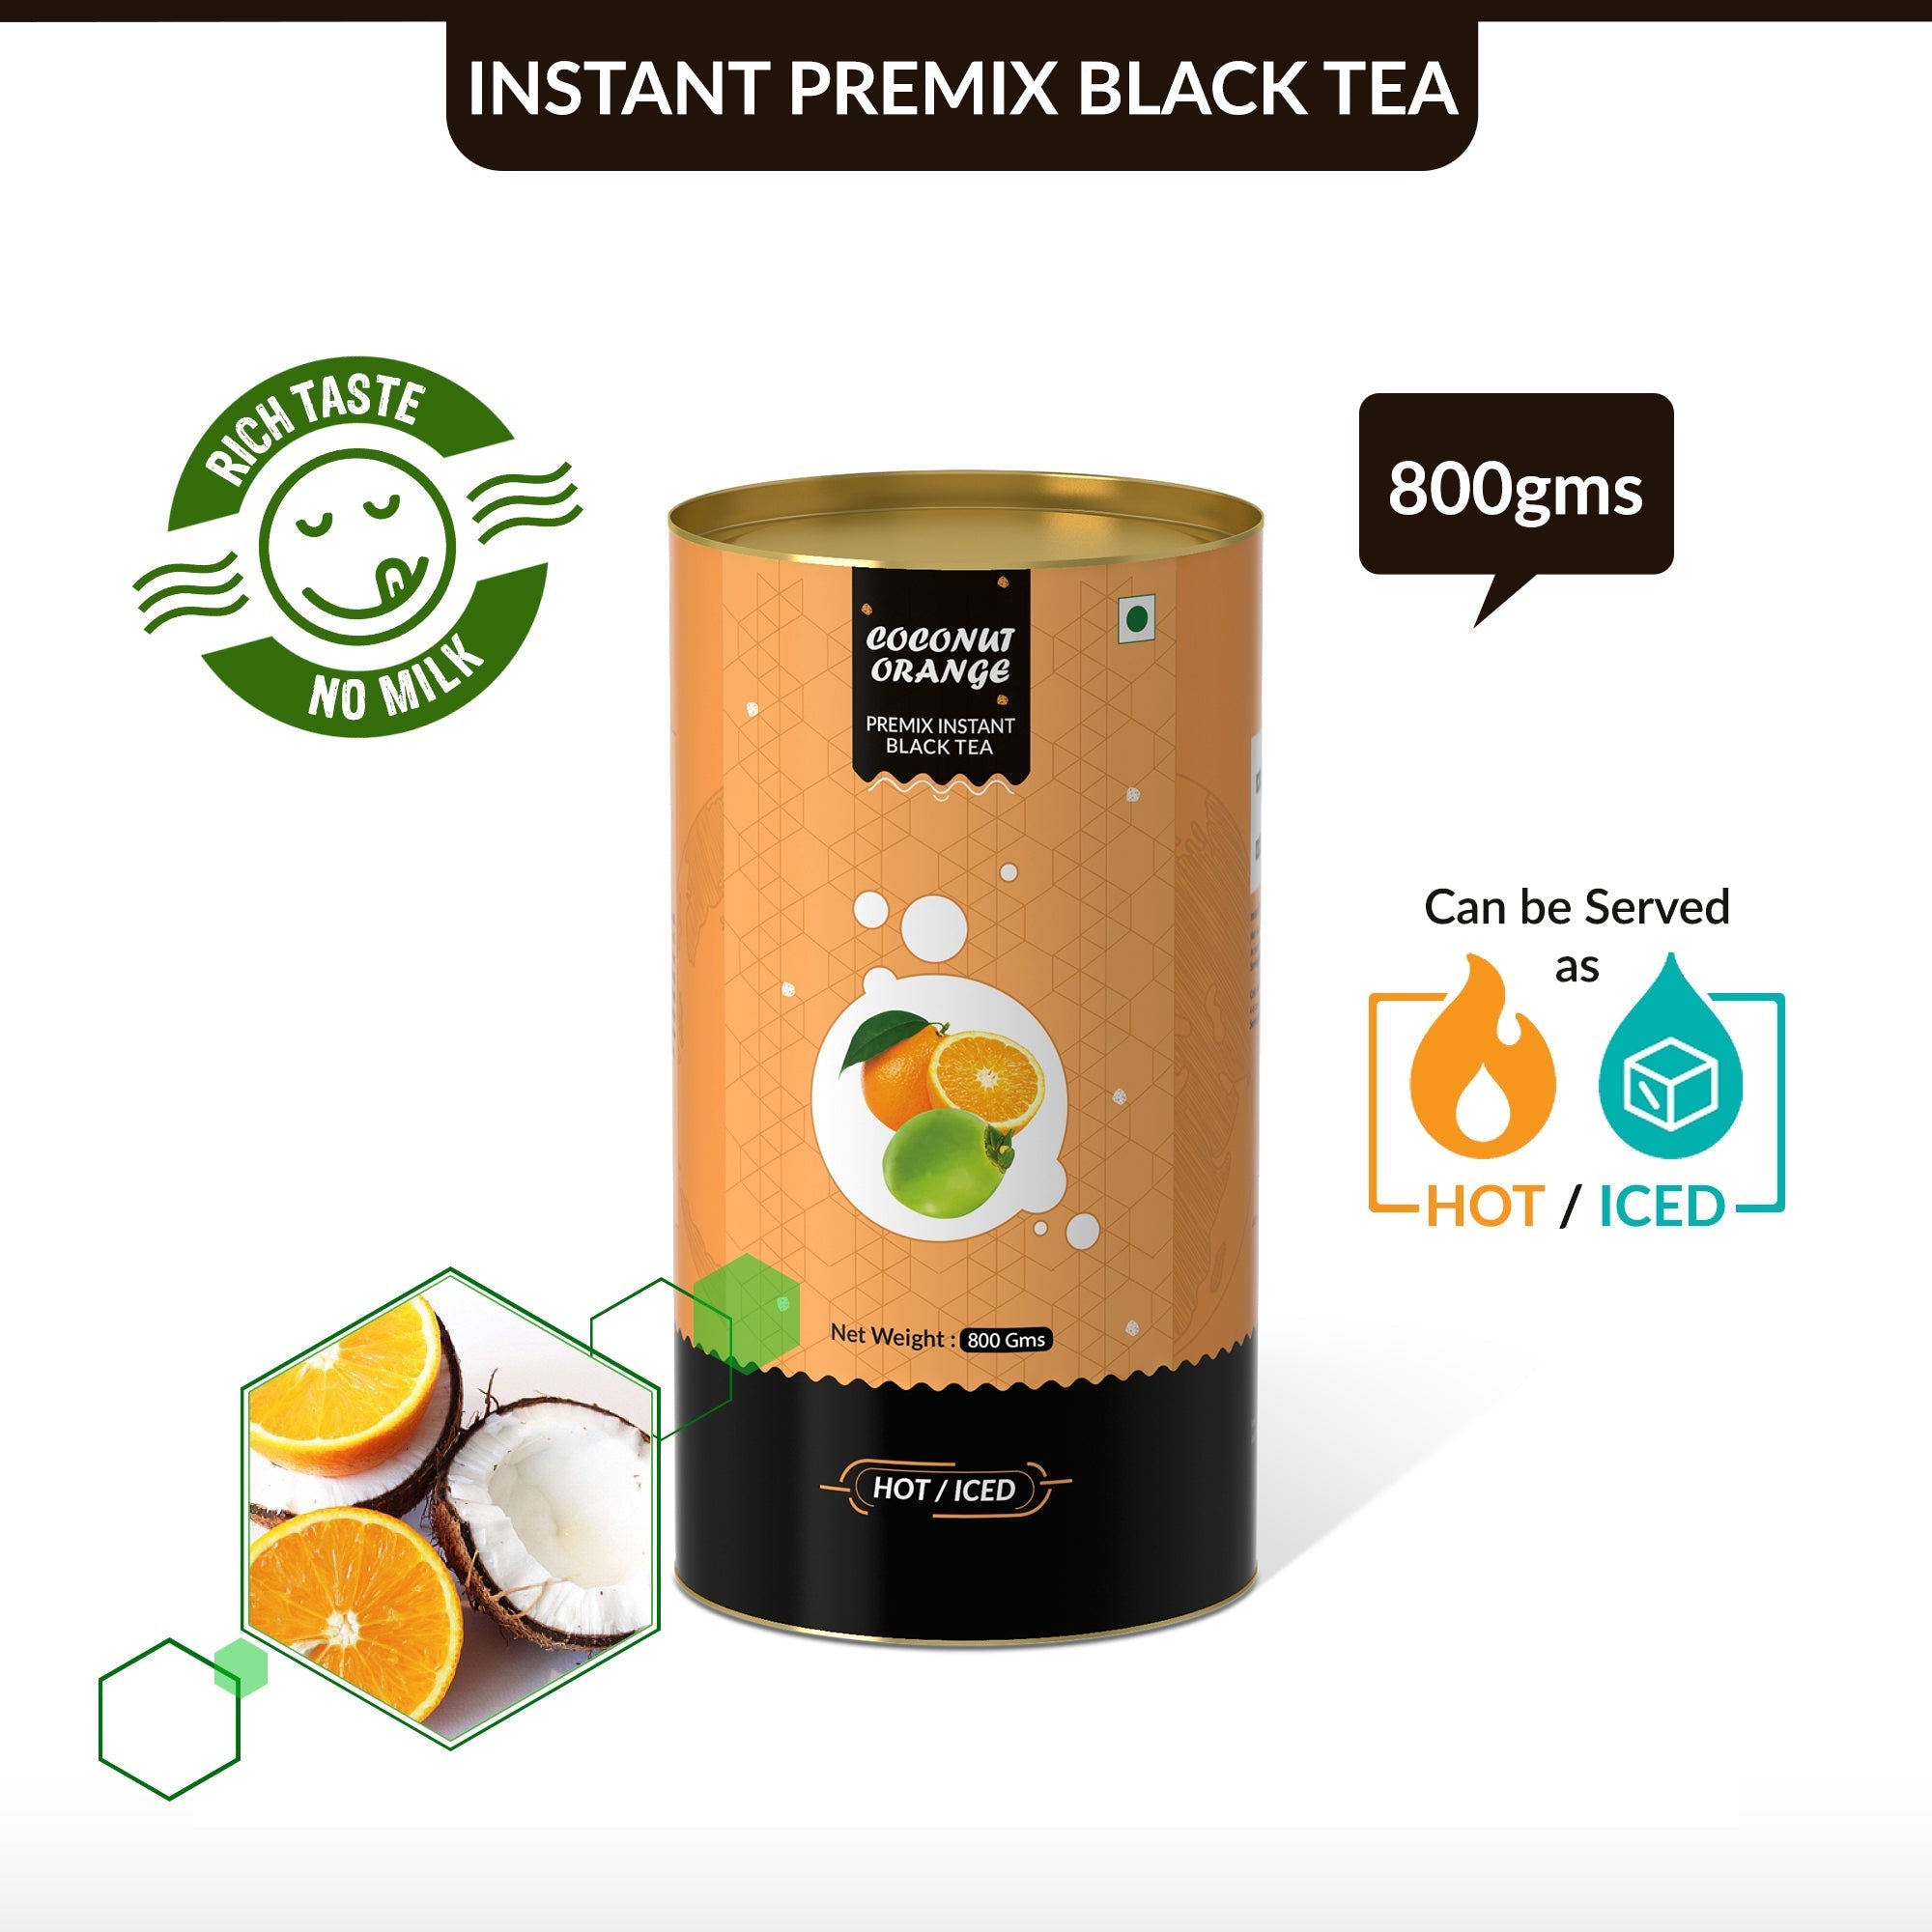 Cococnut Orange Flavored Instant Black Tea - 800 gms